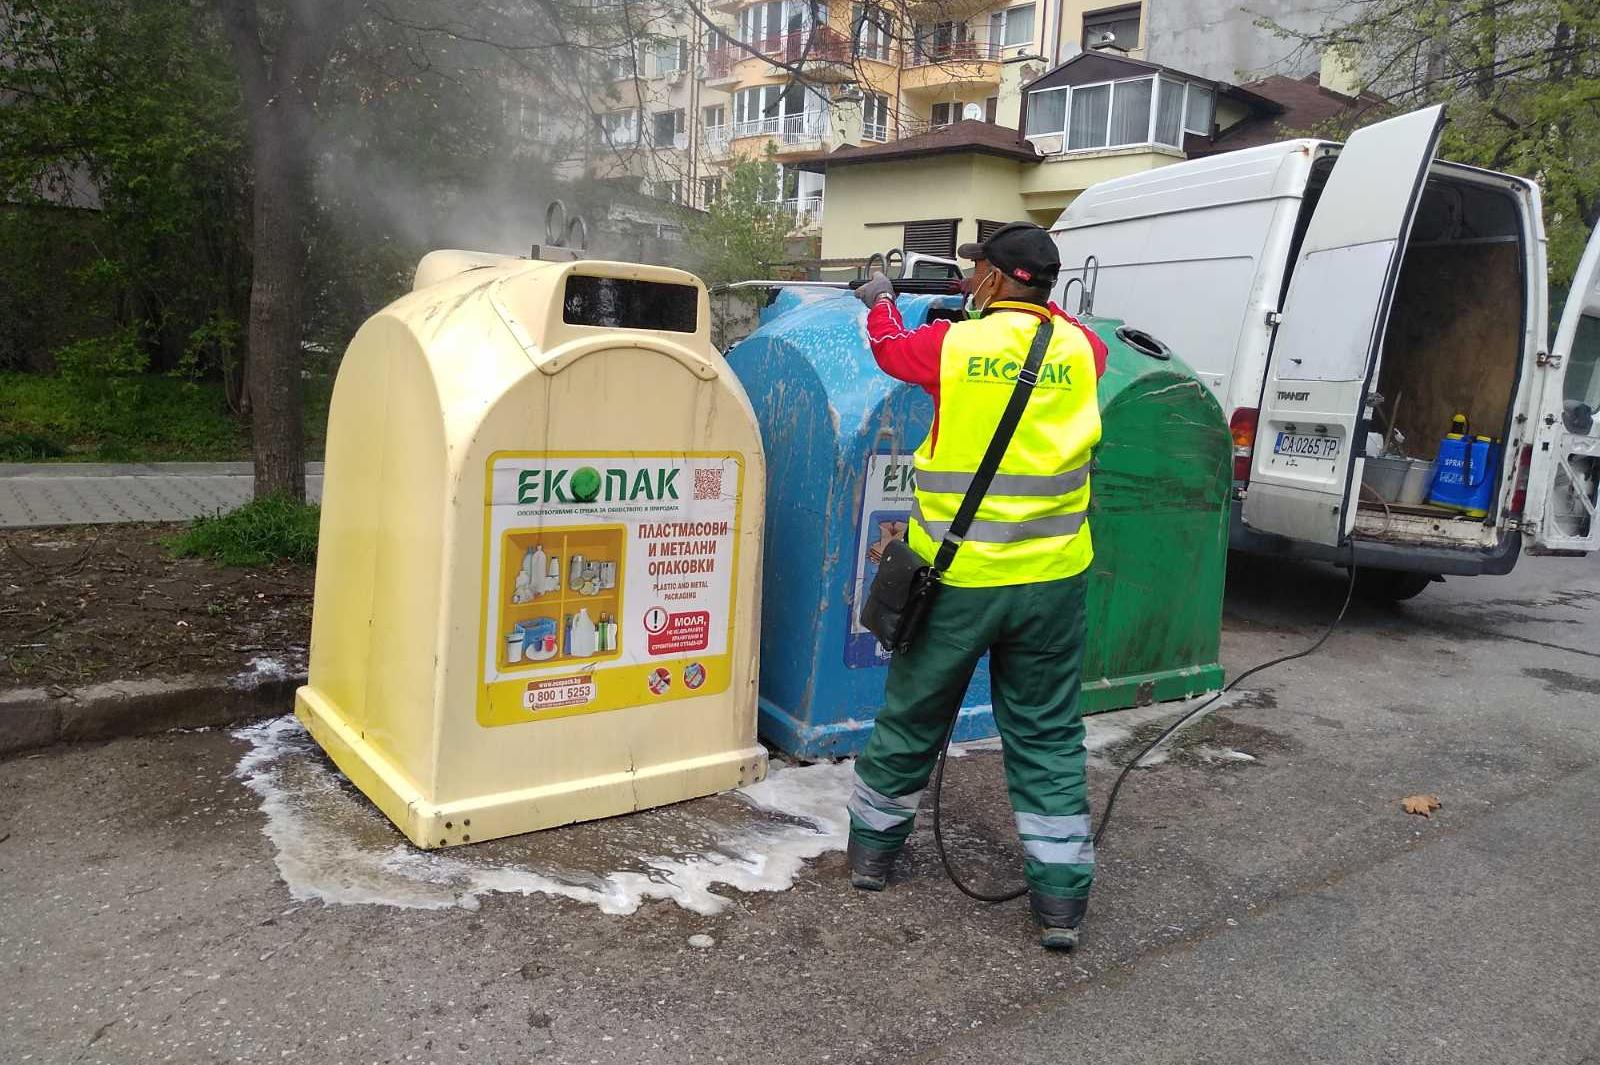 Затягат контрола за изхвърляне на опаковки в София